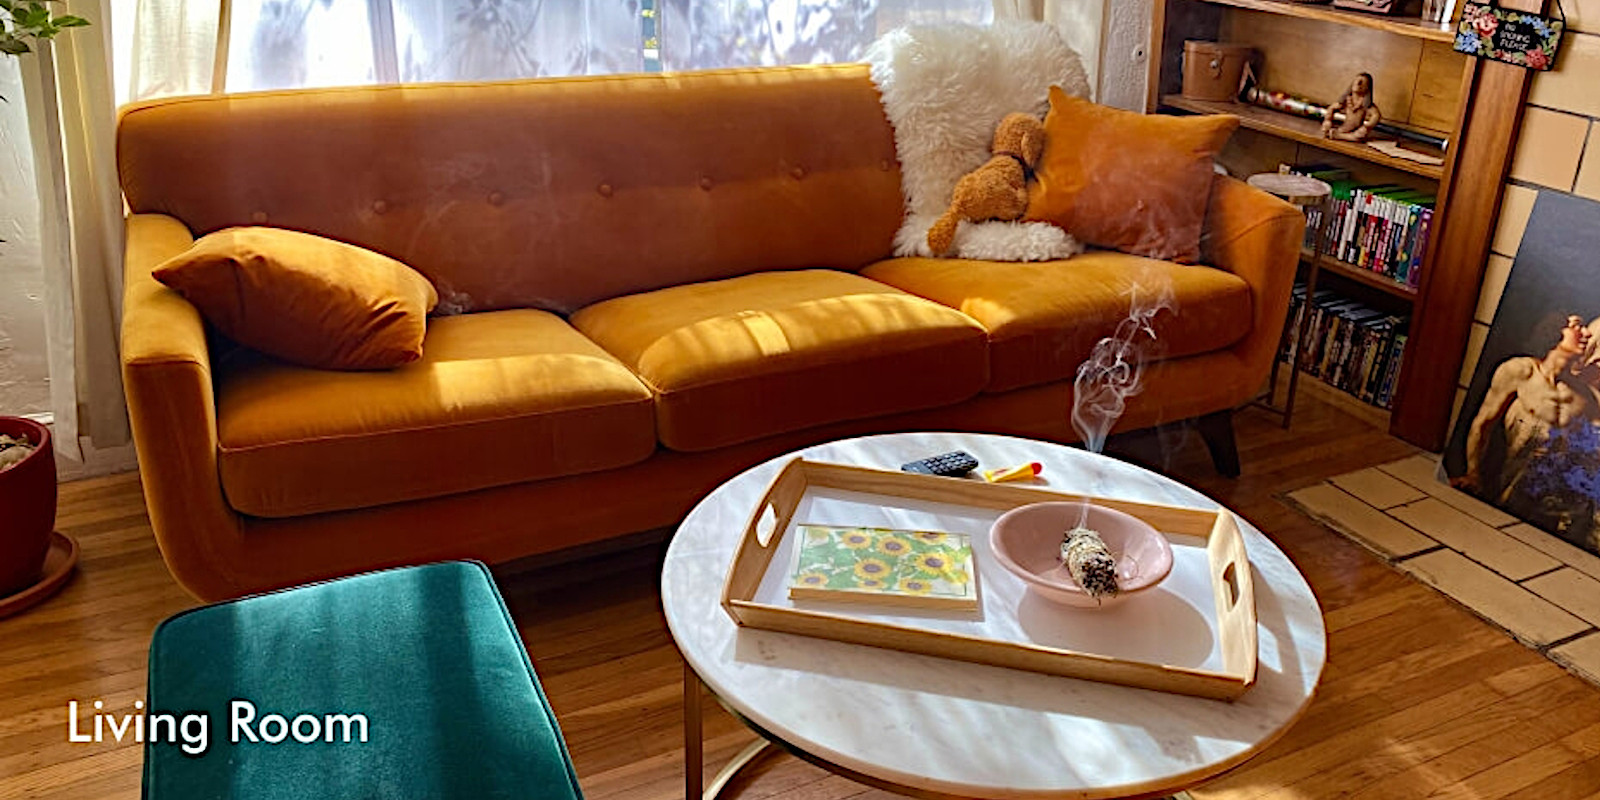 Livingroom furniture on offer